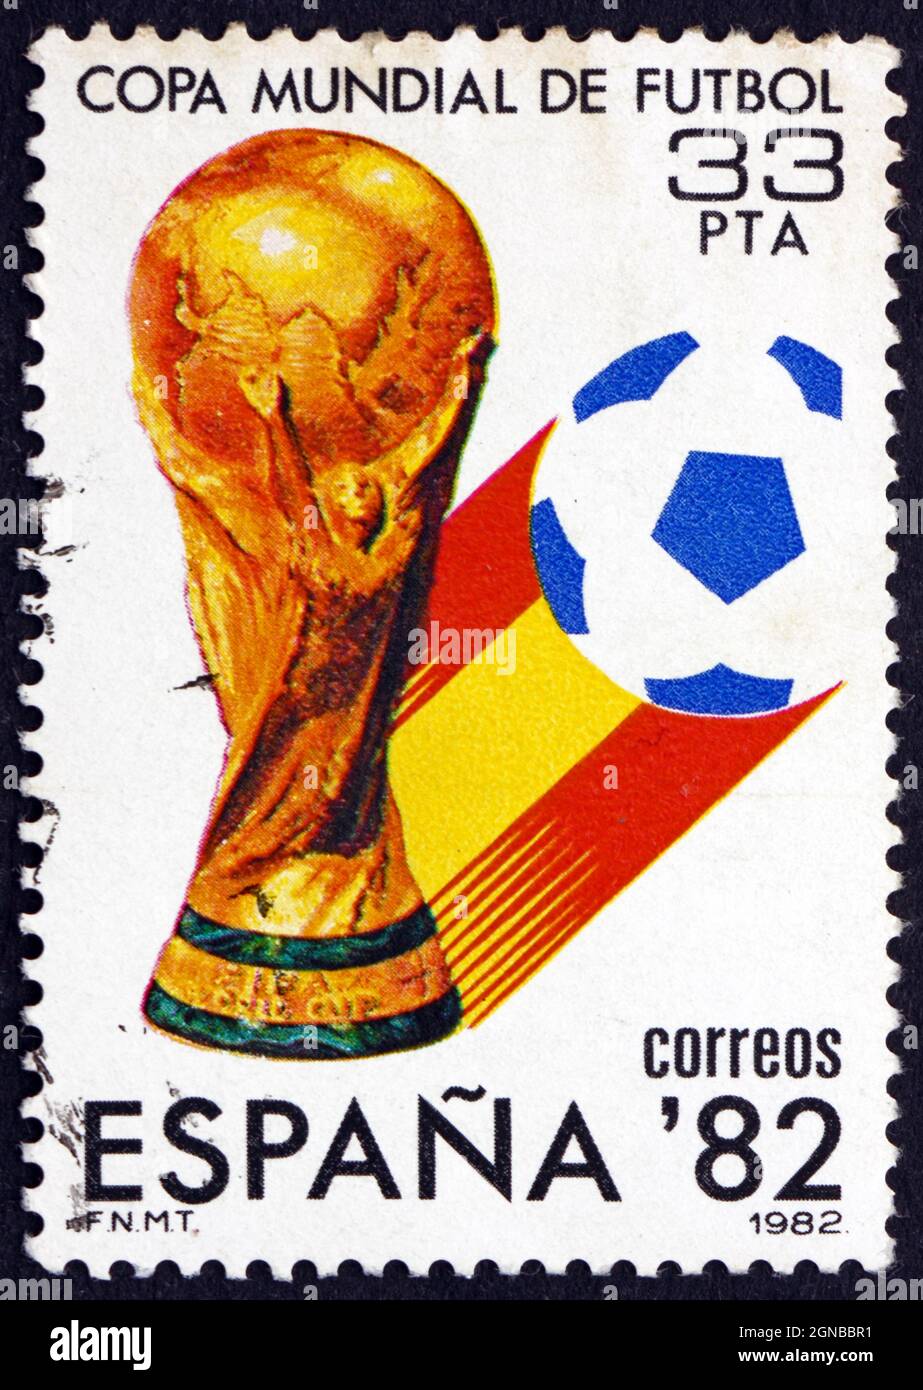 espagne-vers-1982-un-timbre-imprime-en-espagne-montre-cup-et-emblem-espana-82-world-cup-soccer-vers-1982-2gnbbr1.jpg